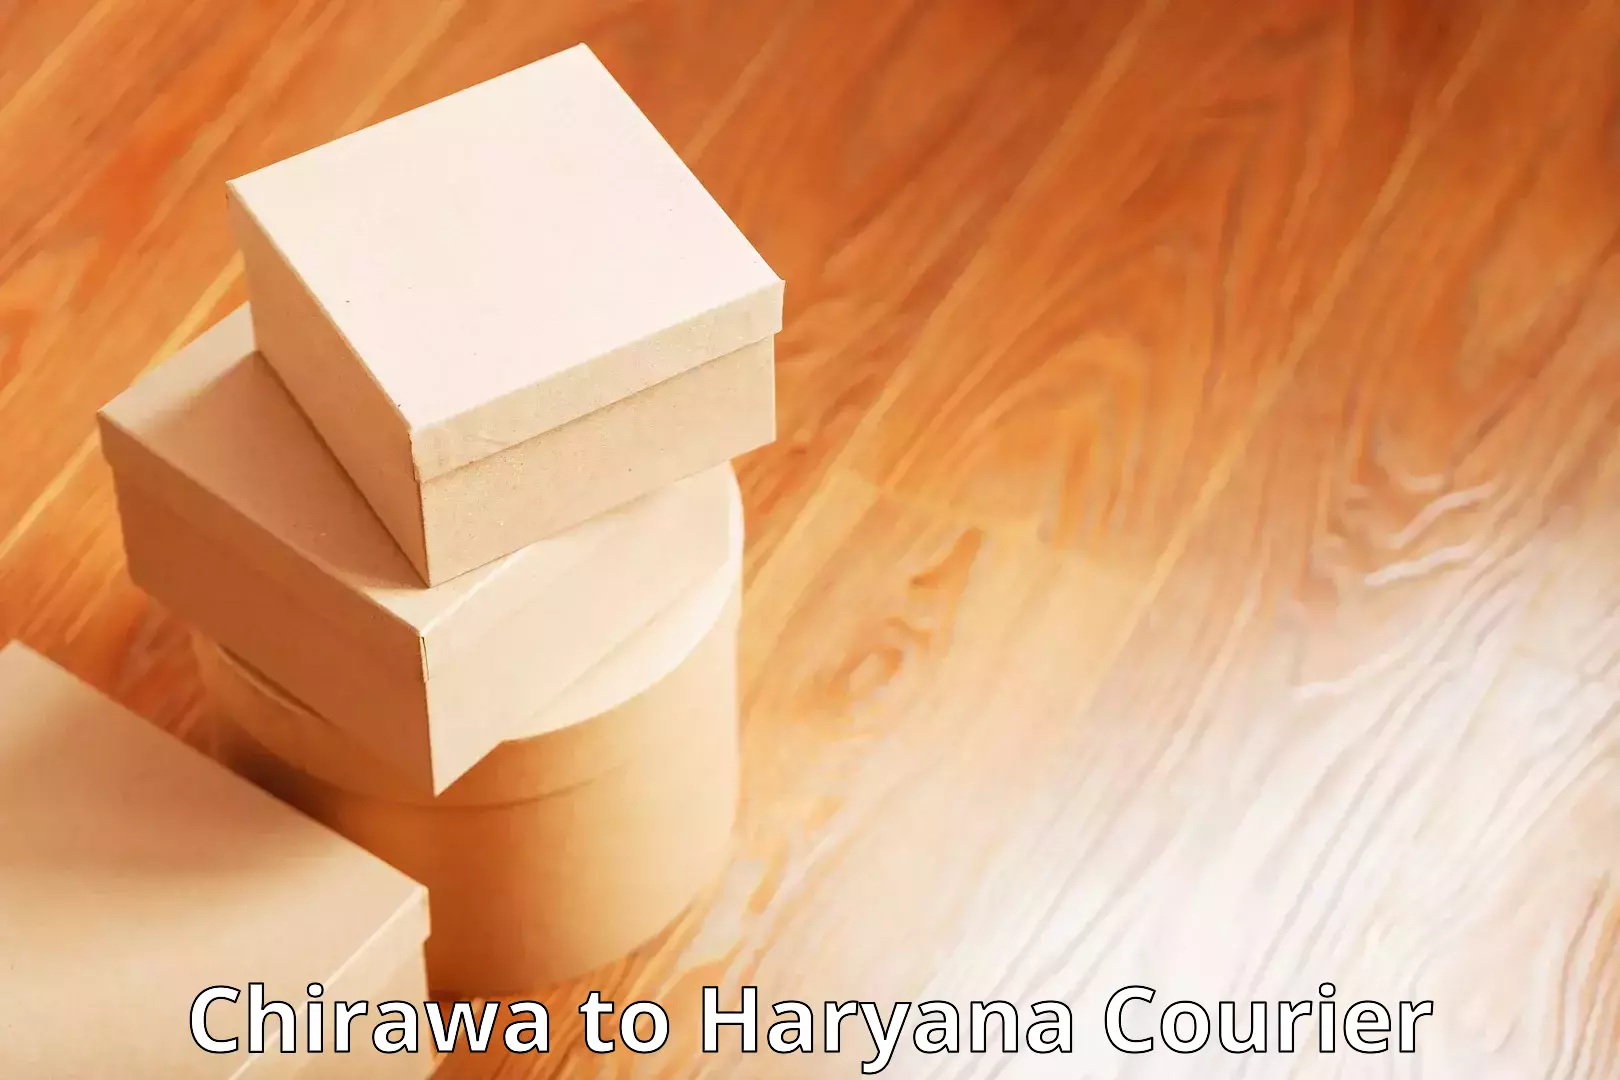 Premium courier services Chirawa to Haryana